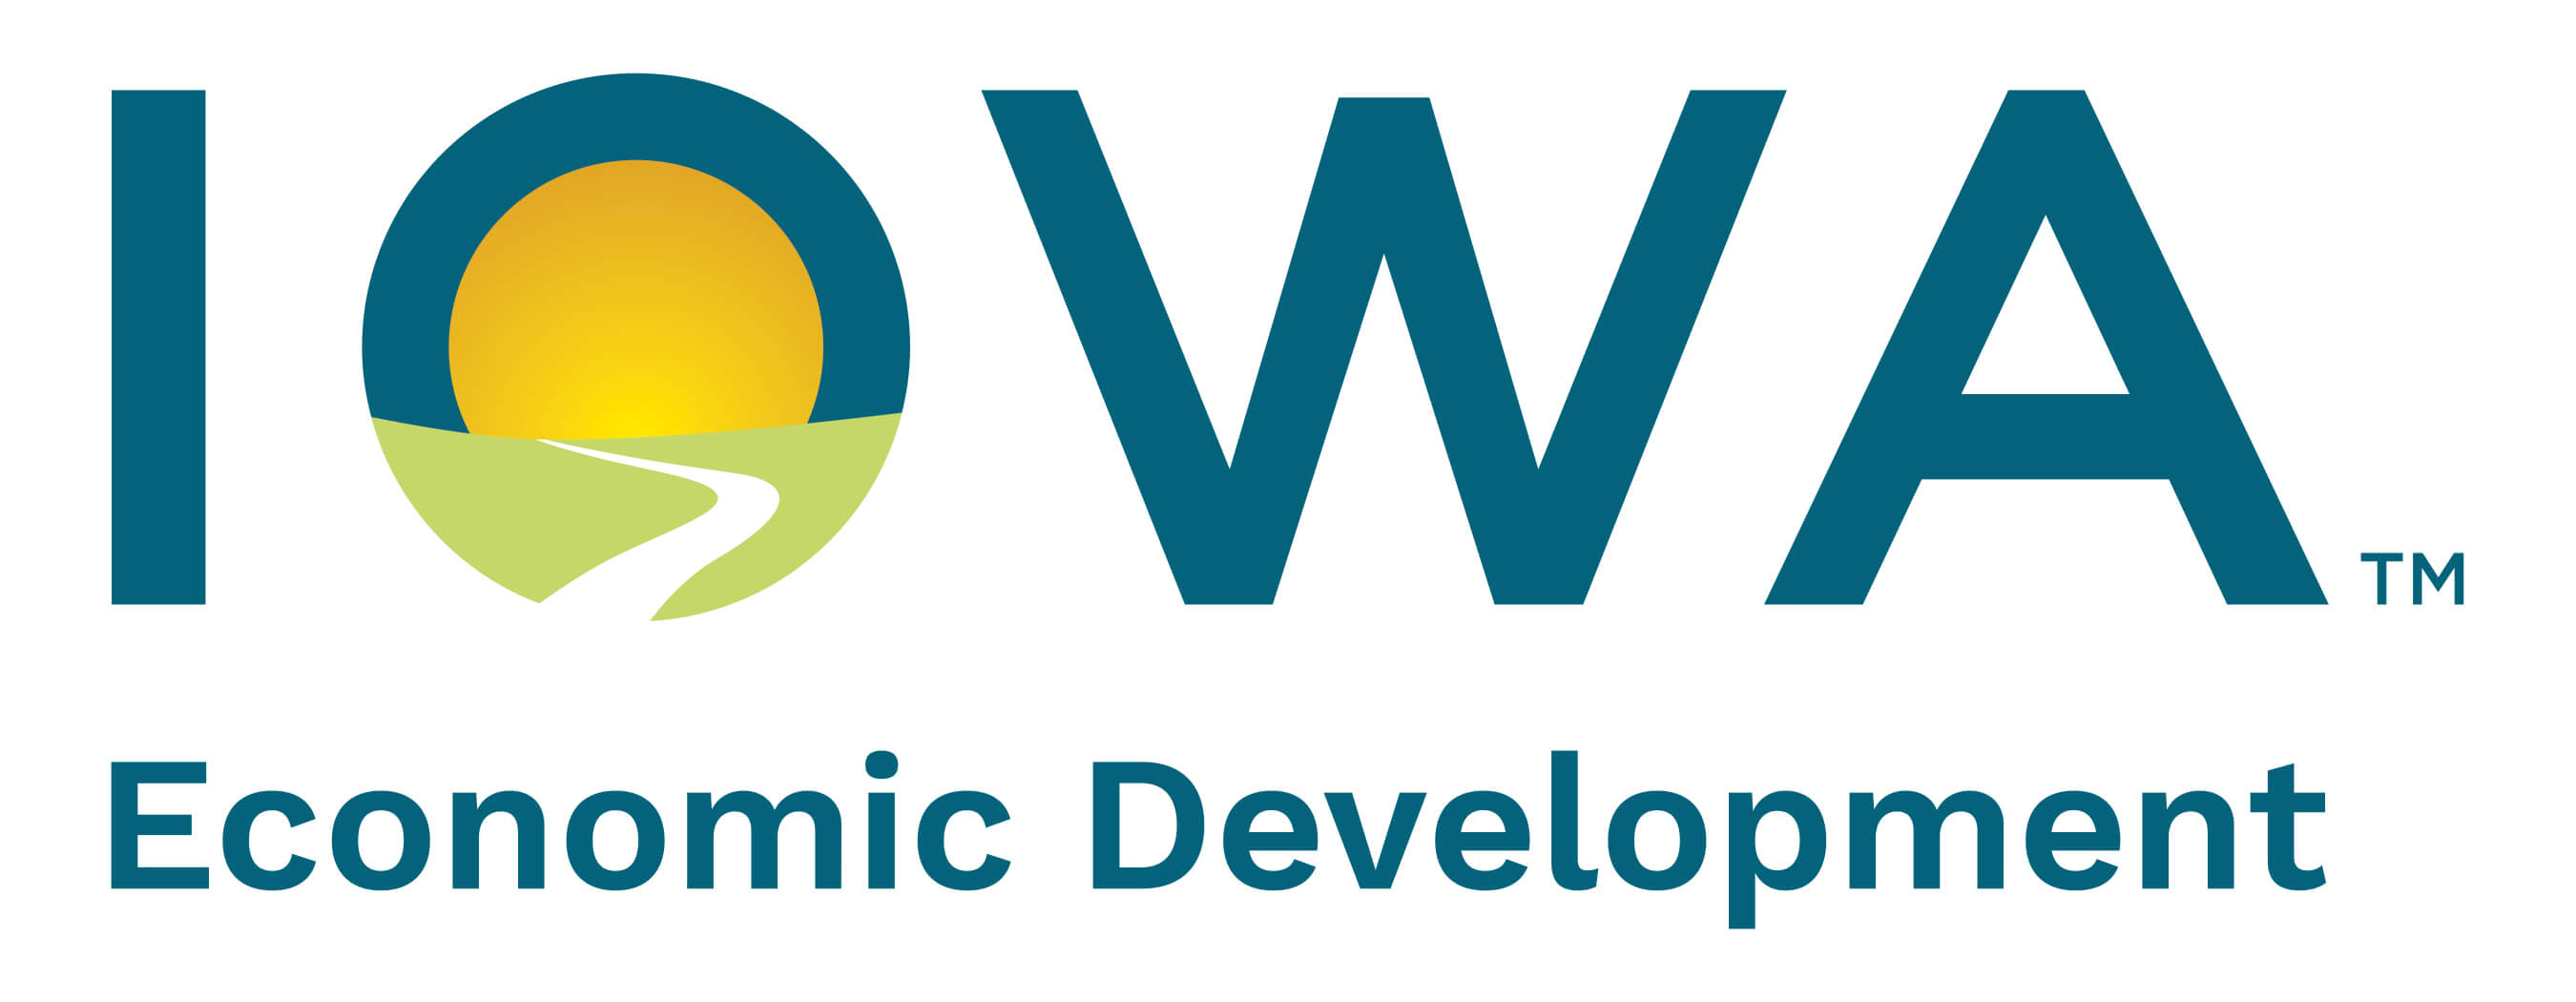 Iowa Economic Develoment Authority (IEDA) Logo